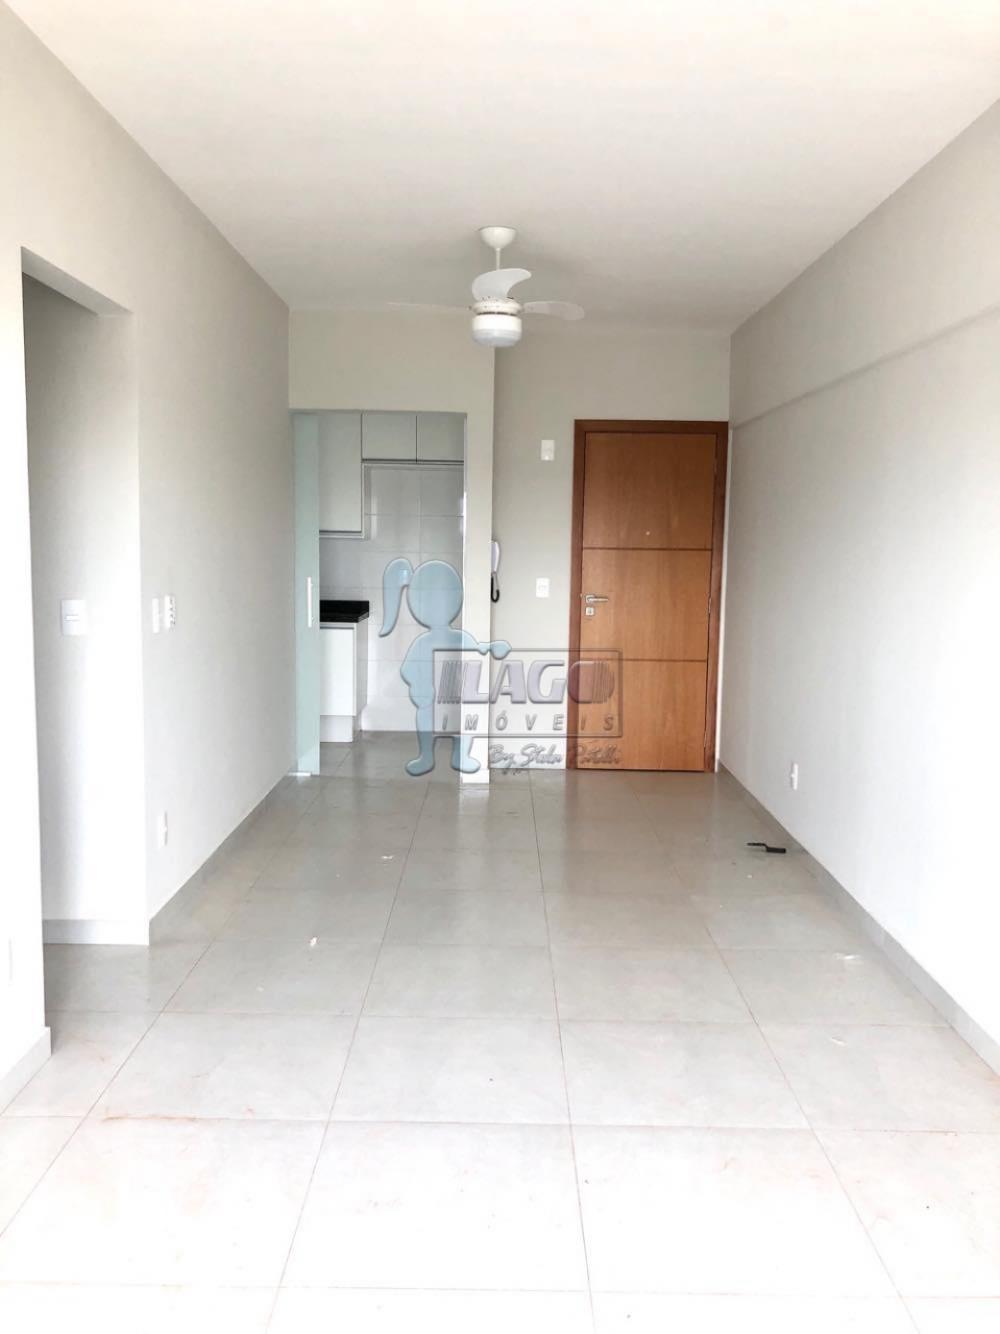 Alugar Apartamentos / Padrão em Bonfim Paulista R$ 1.200,00 - Foto 2